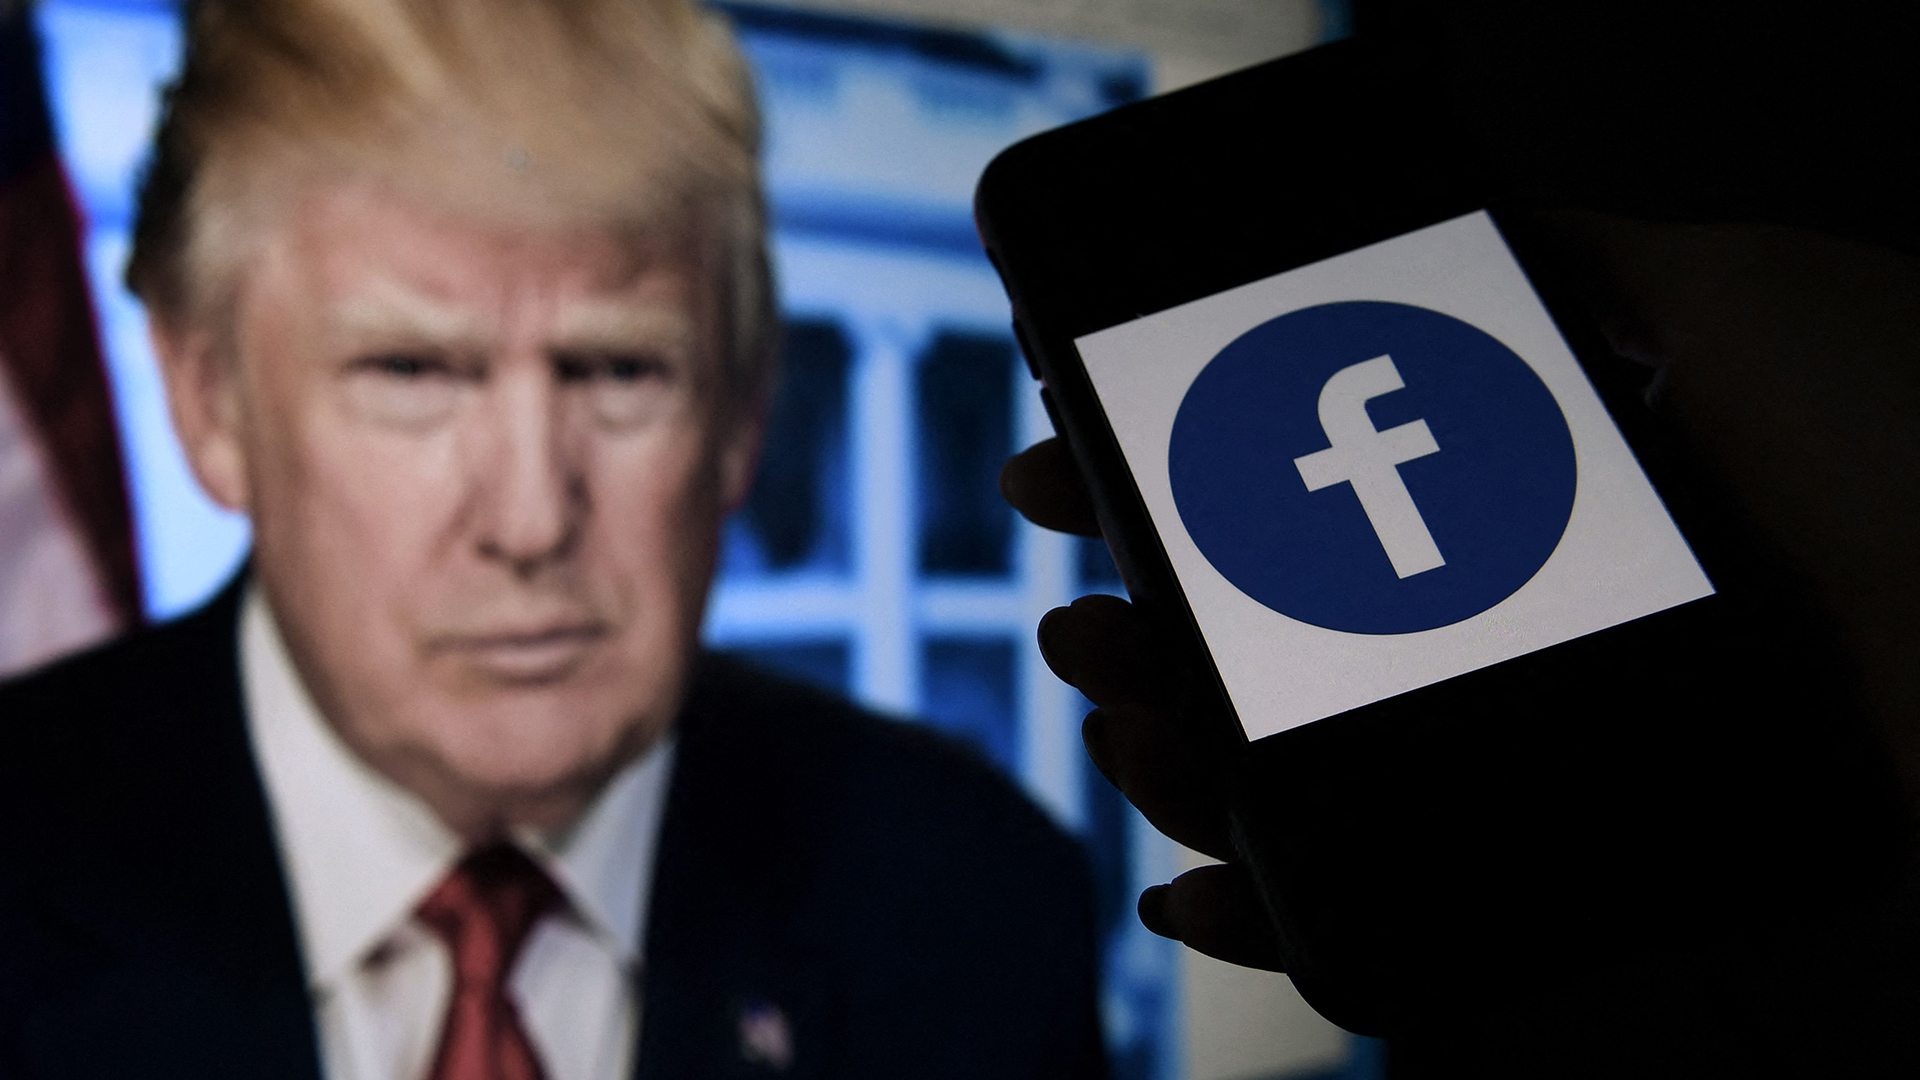 Auf einem Telefondisplay ist das Logo von facebook zu sehen und auf einem Monitor dahinter ist Donald Trump zu sehen.